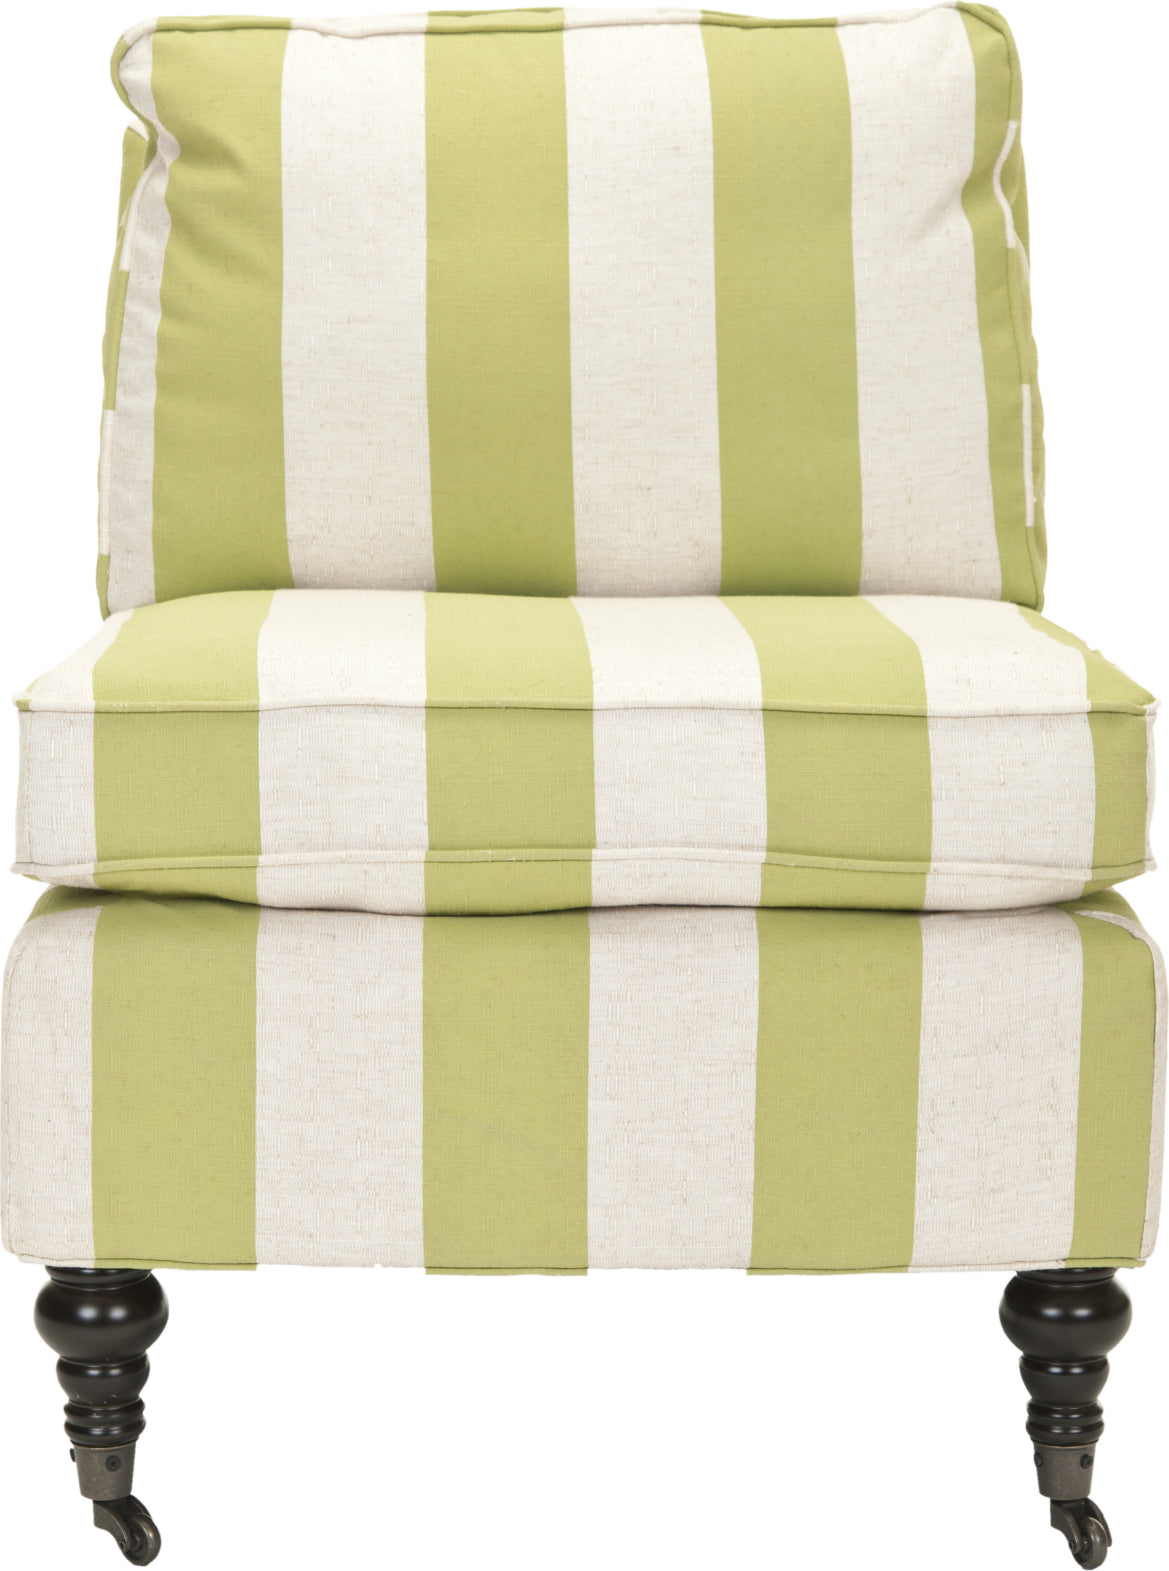 Safavieh Randy Slipper Chair Multi Stripe and Espresso Furniture main image